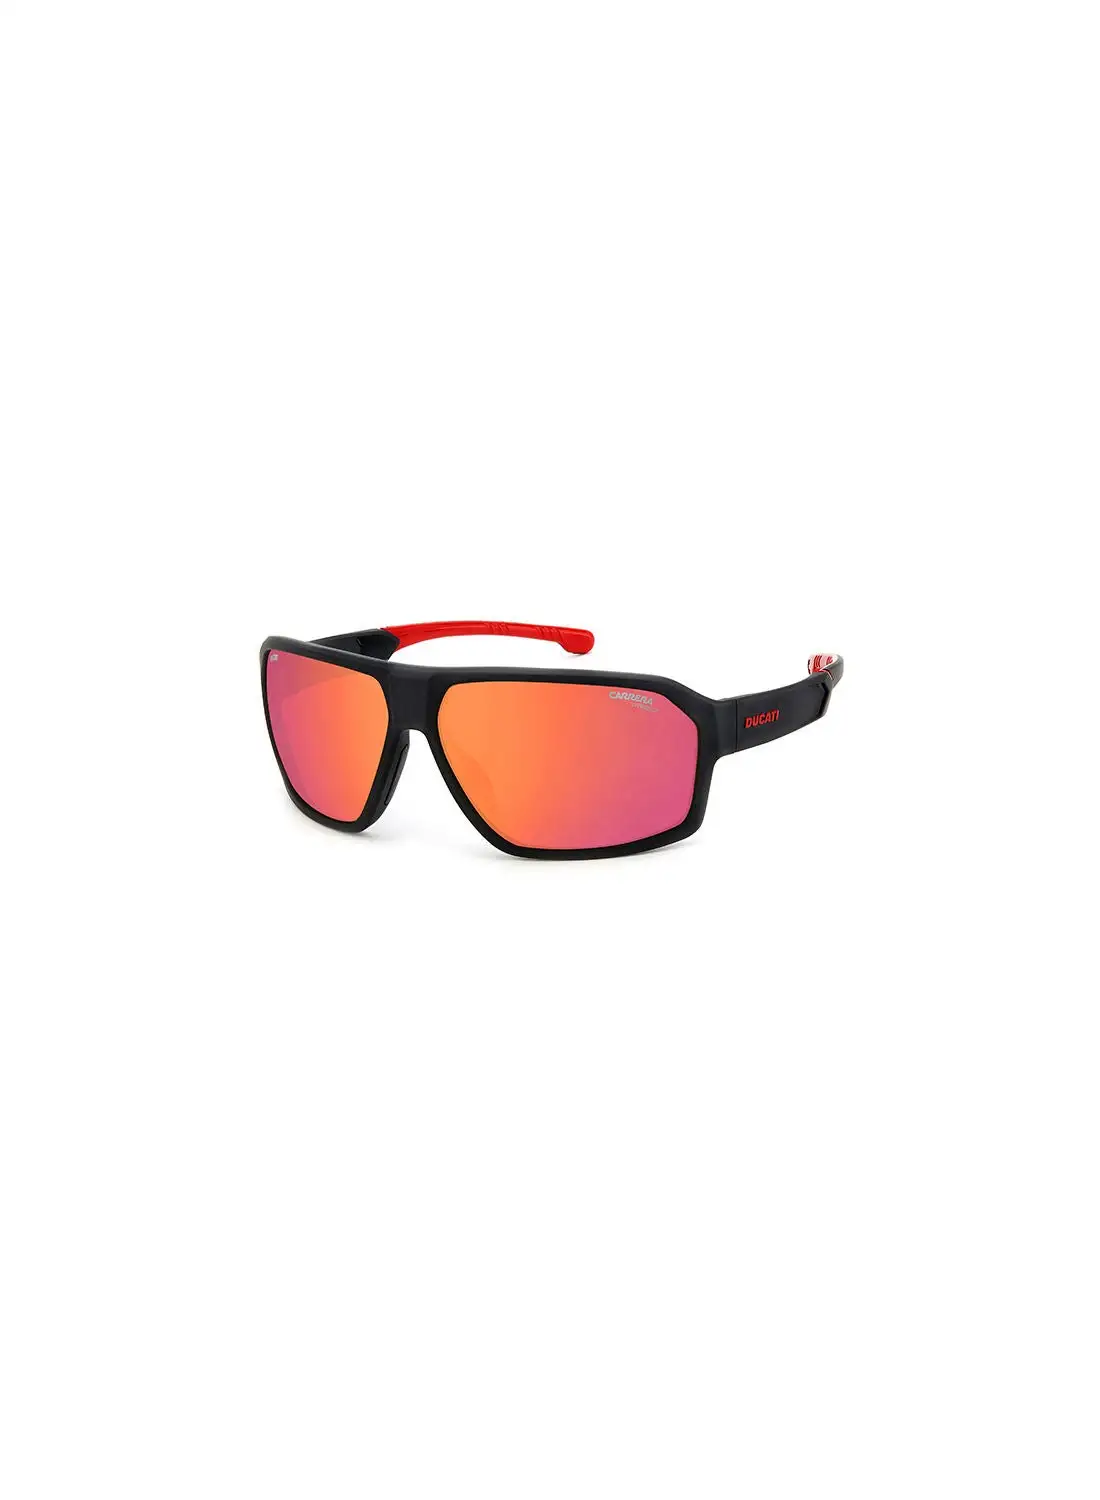 نظارة كاريرا الشمسية مستطيلة الشكل للحماية من الأشعة فوق البنفسجية للرجال - Carduc 020/S أسود أحمر 66 - مقاس العدسة: 66 ملم